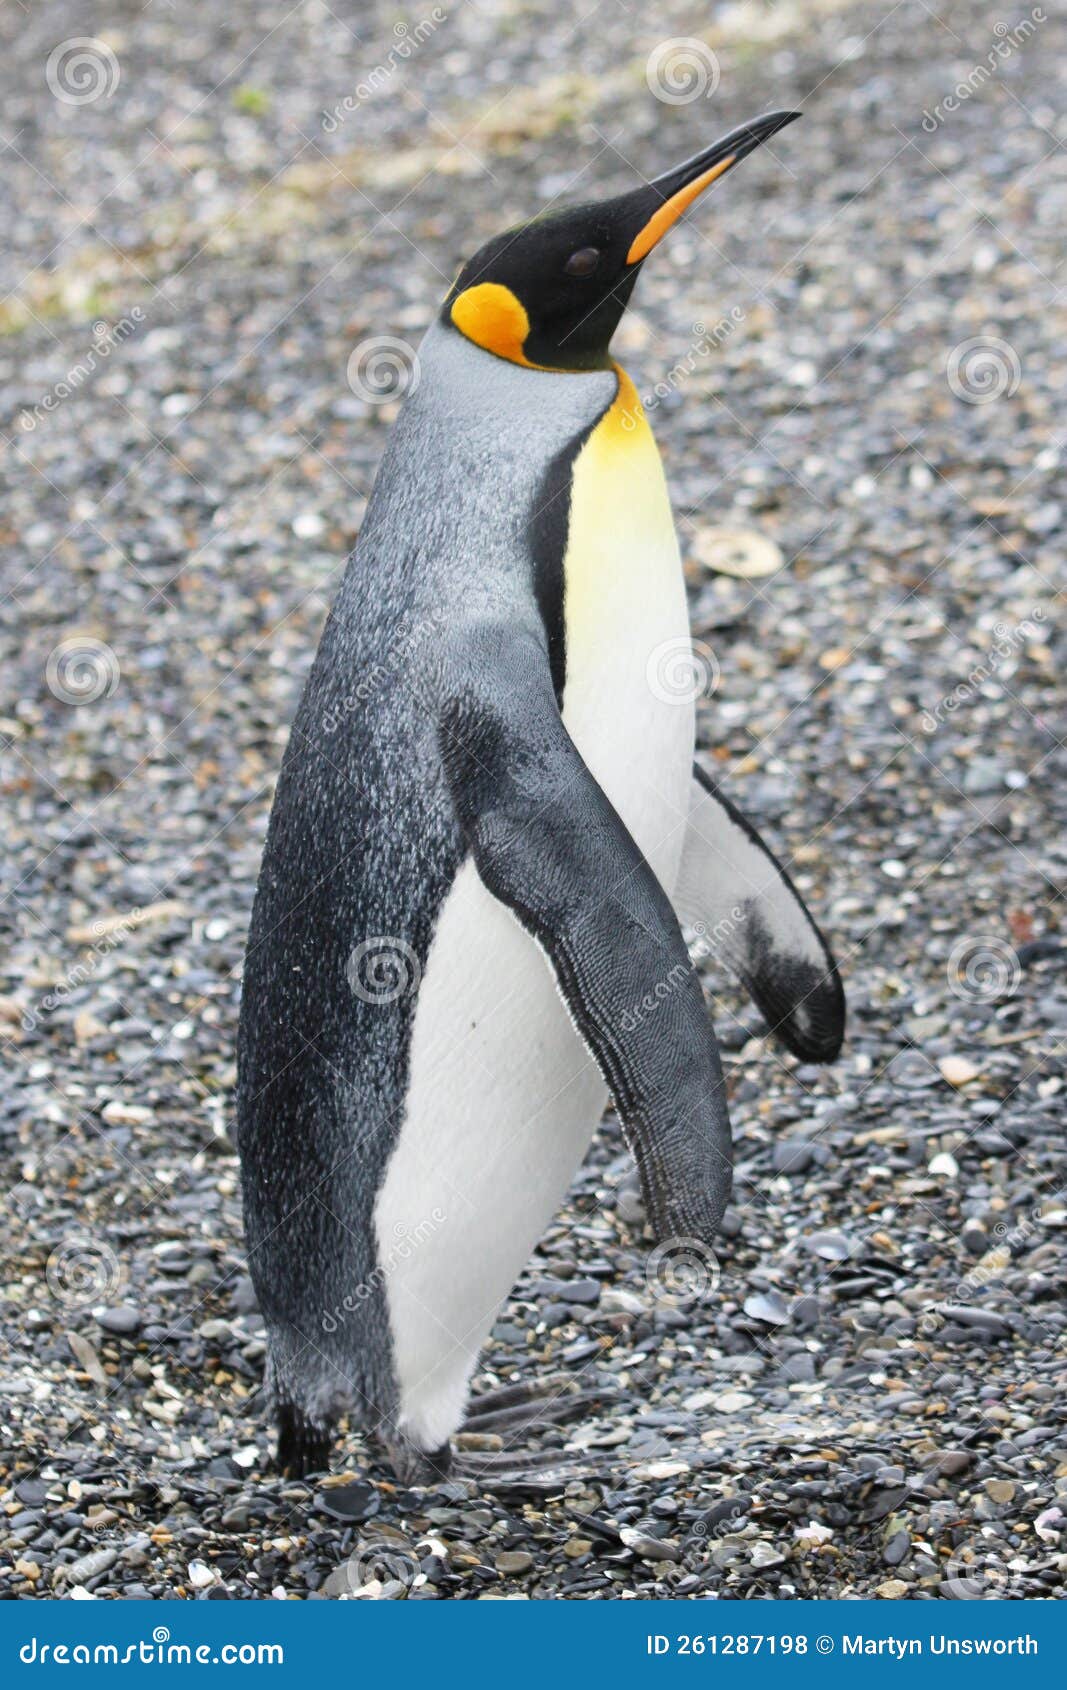 king penguin on isla martillo, tierra del fuego